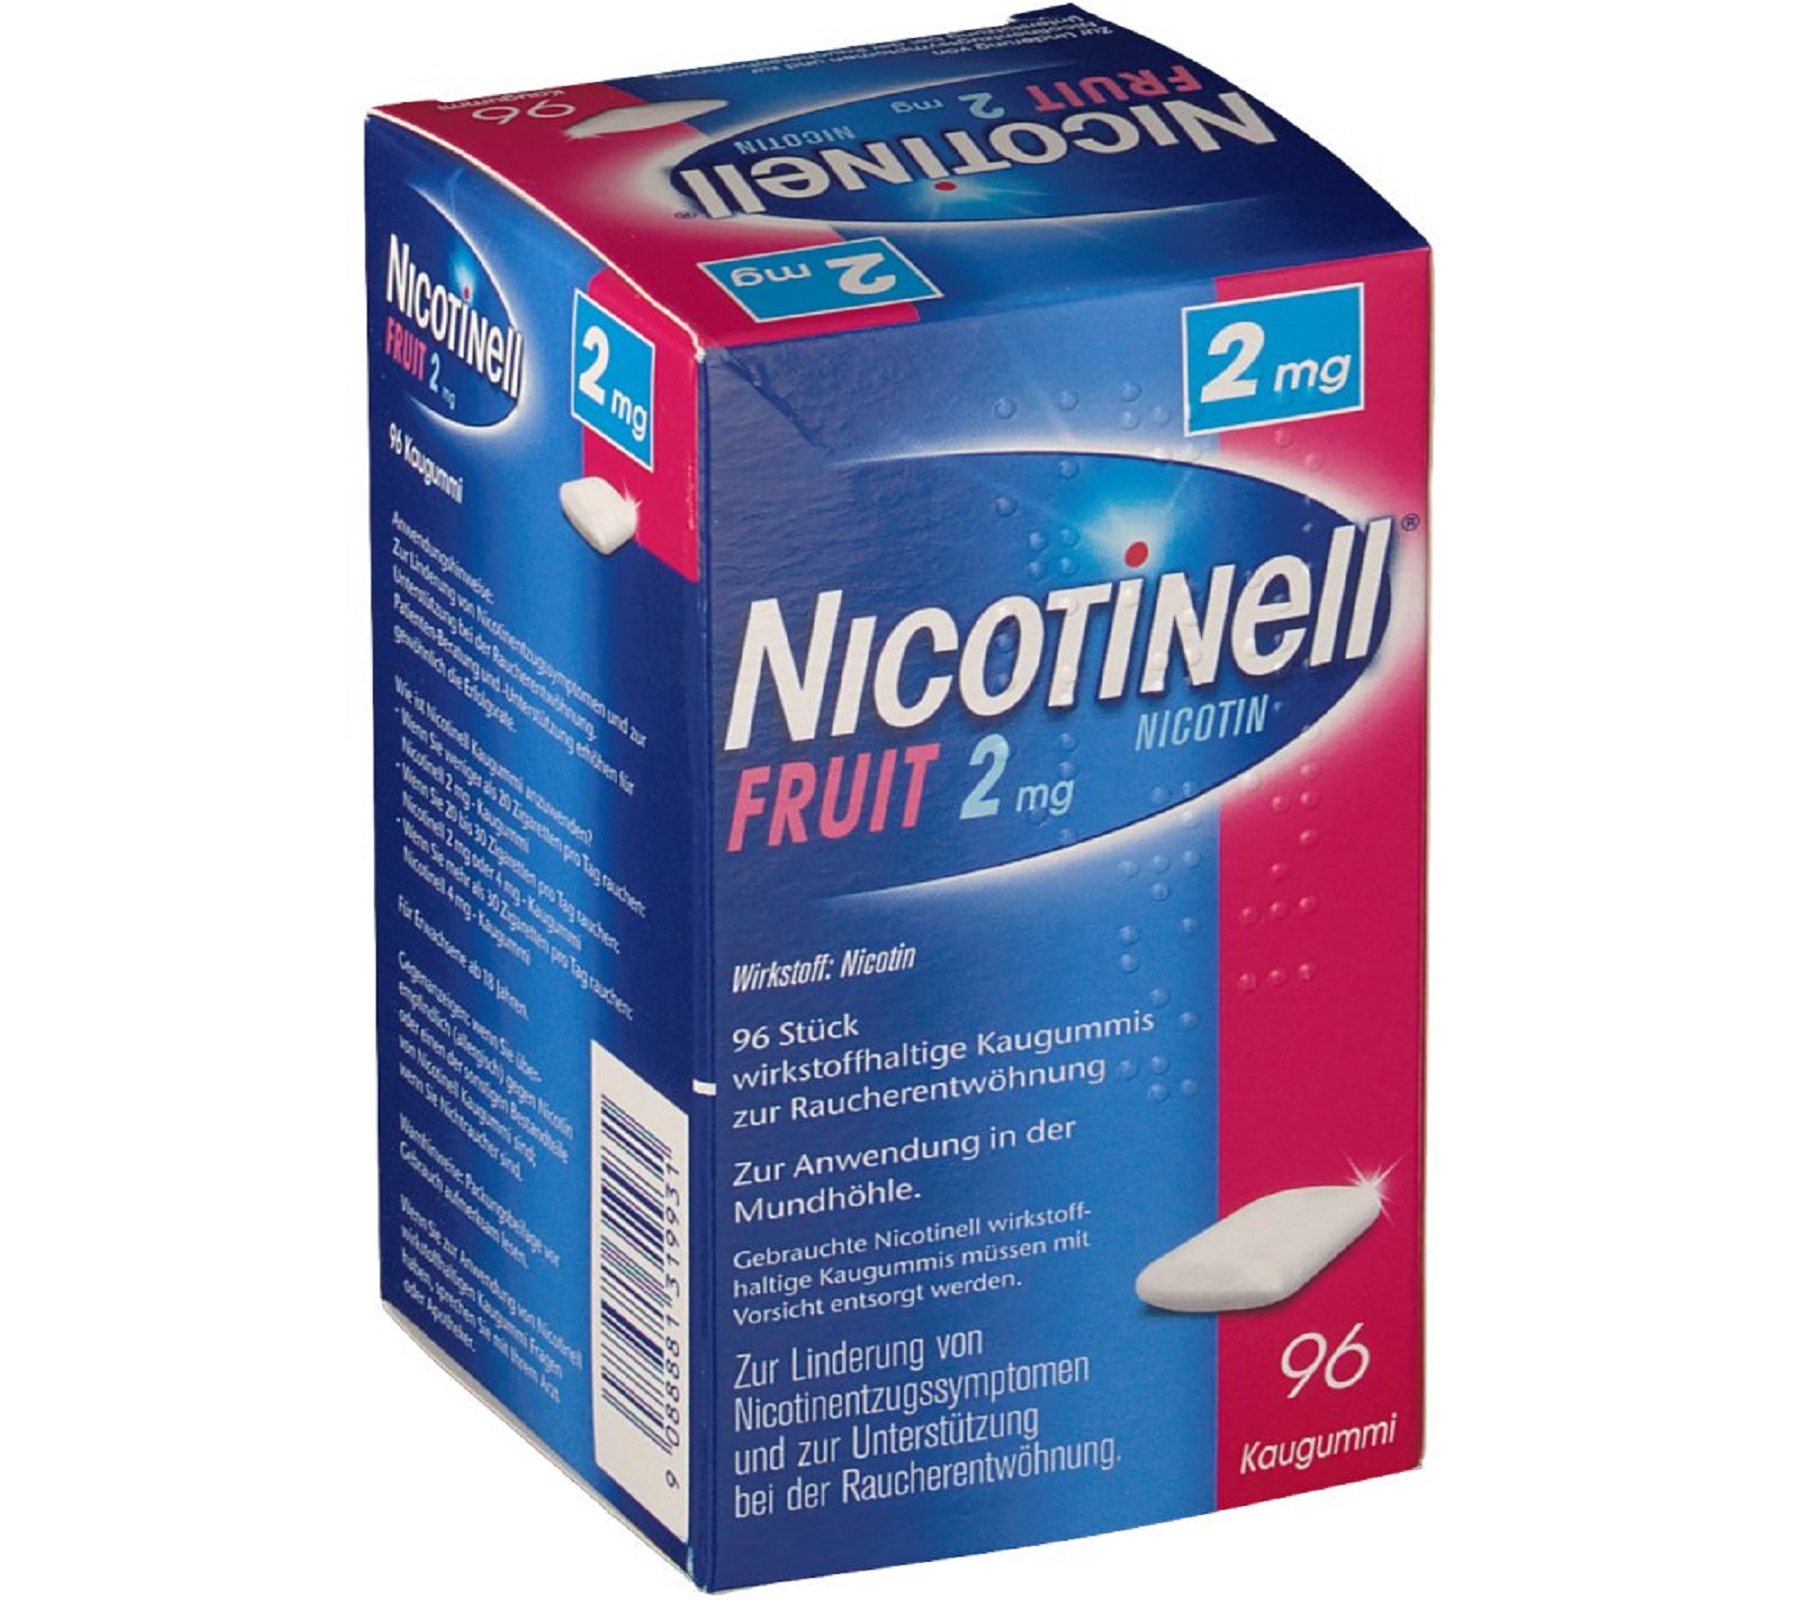 Nicotinell Fruit 2 mg - wirkstoffhaltige Kaugummis zur Raucherentwöhnung